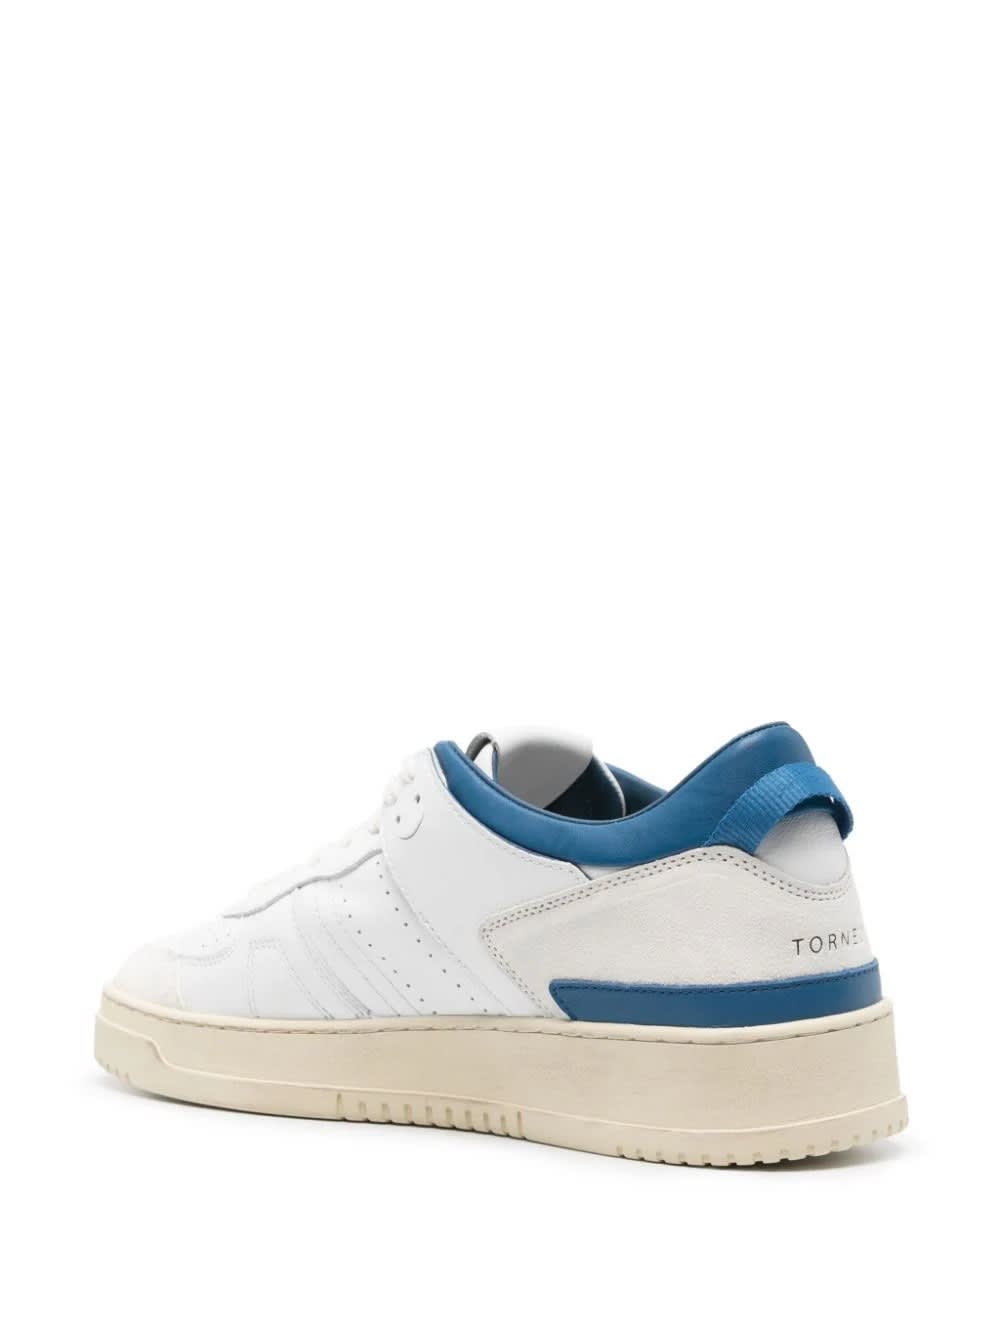 Shop Date White And Bluettetorneo Sneakers